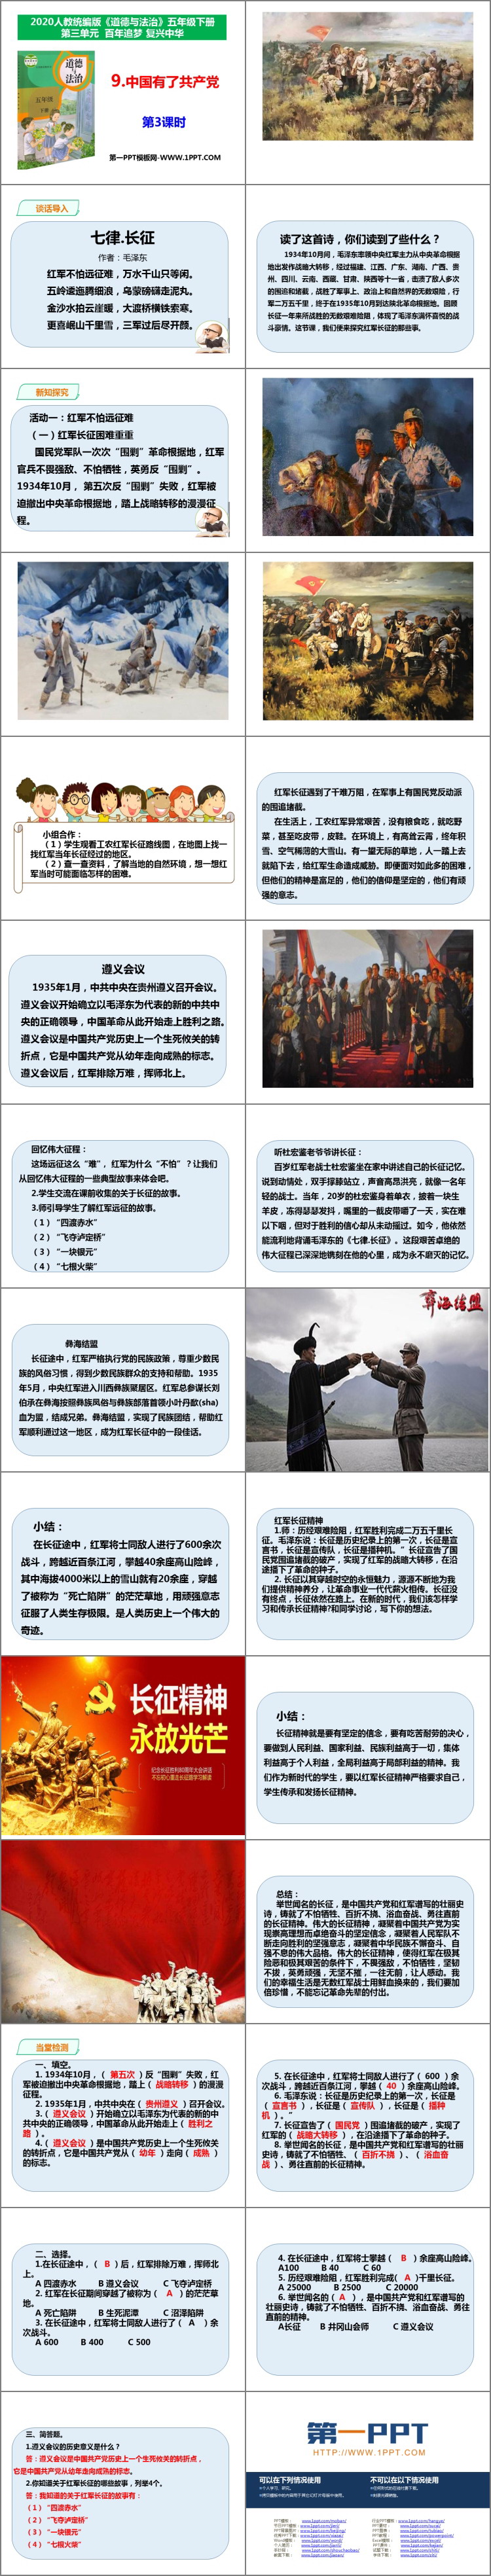 《中国有了共产党》PPT下载(第3课时)